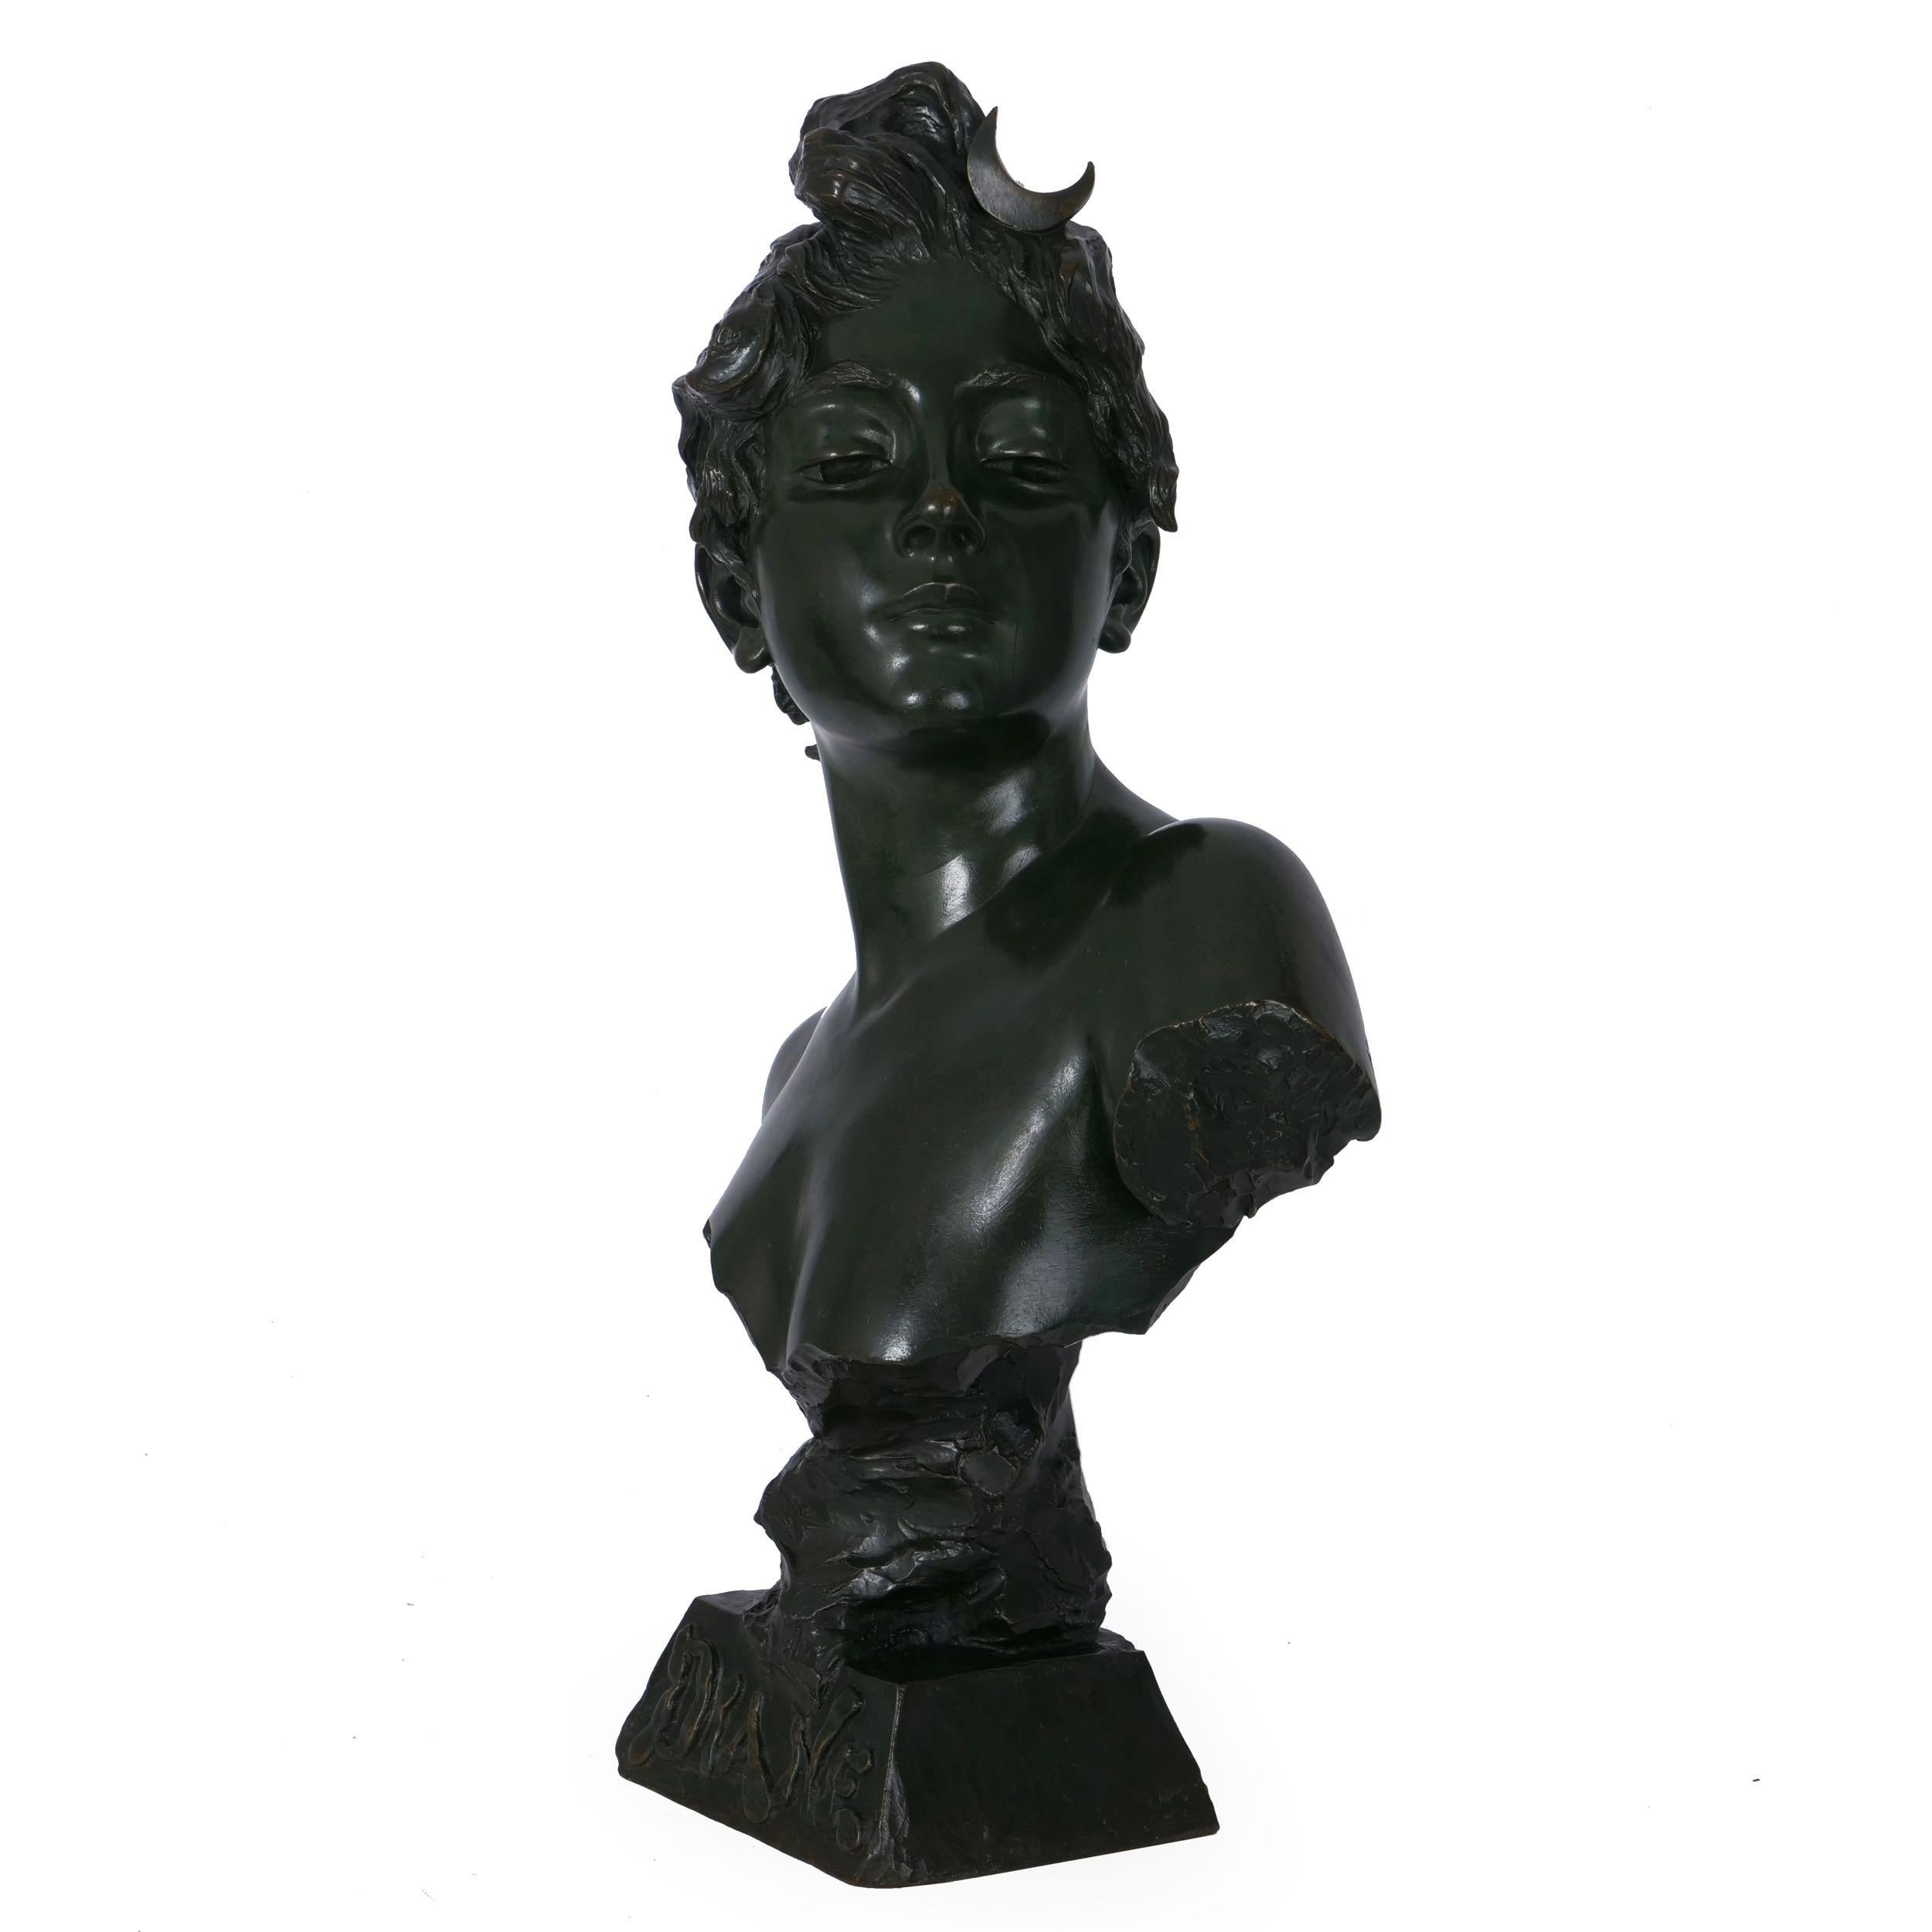 French Art Nouveau Antique Bronze Sculpture “Bust of Diane” by Emmanuel Villanis